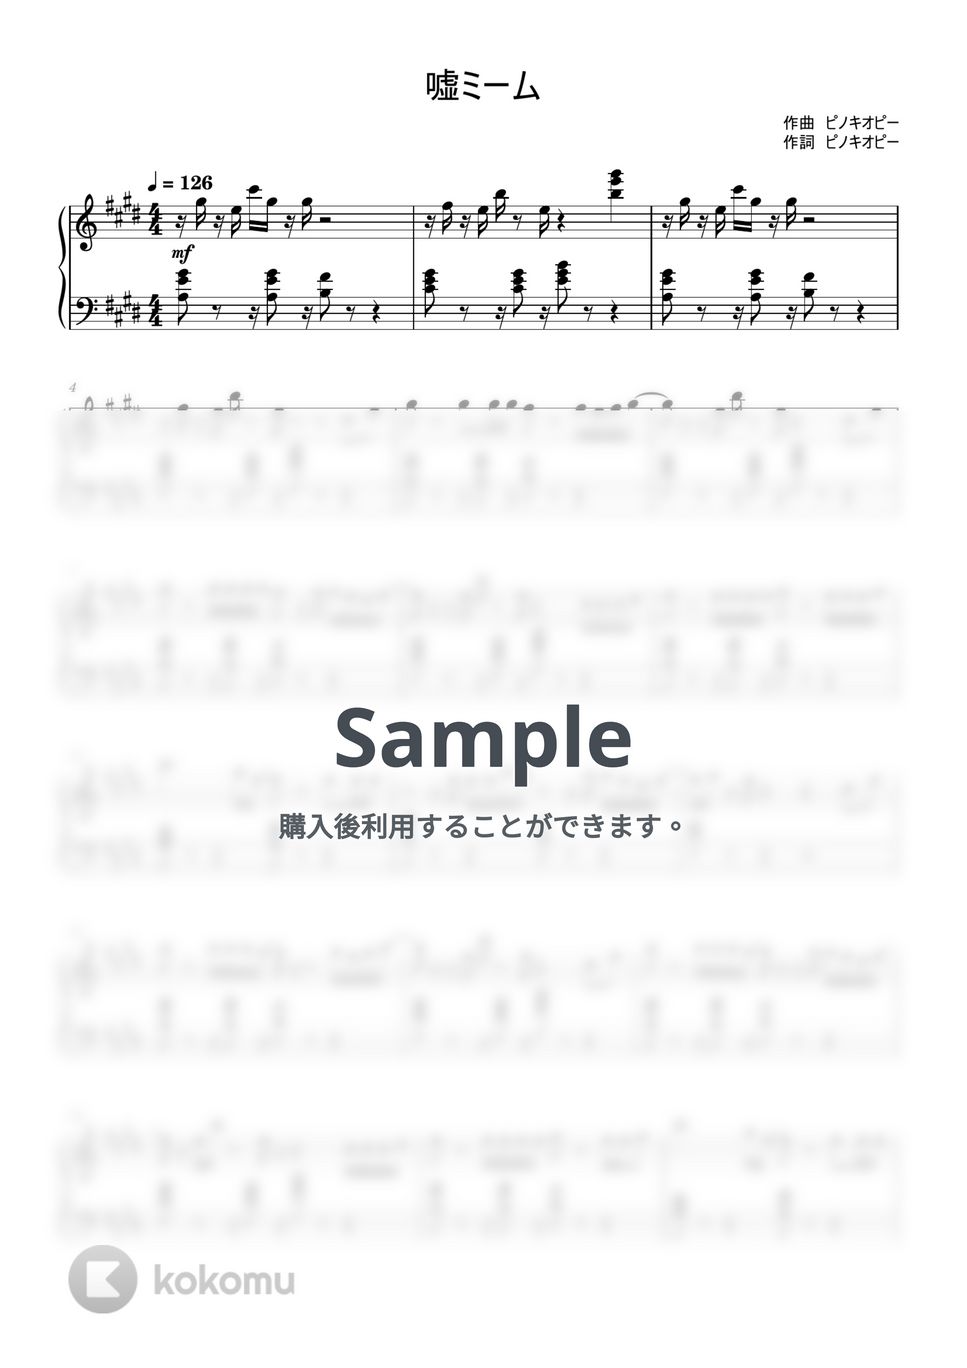 ピノキオピー - 嘘ミーム (ピアノソロ/ピノキオピー/初音ミク) by xxTazxx